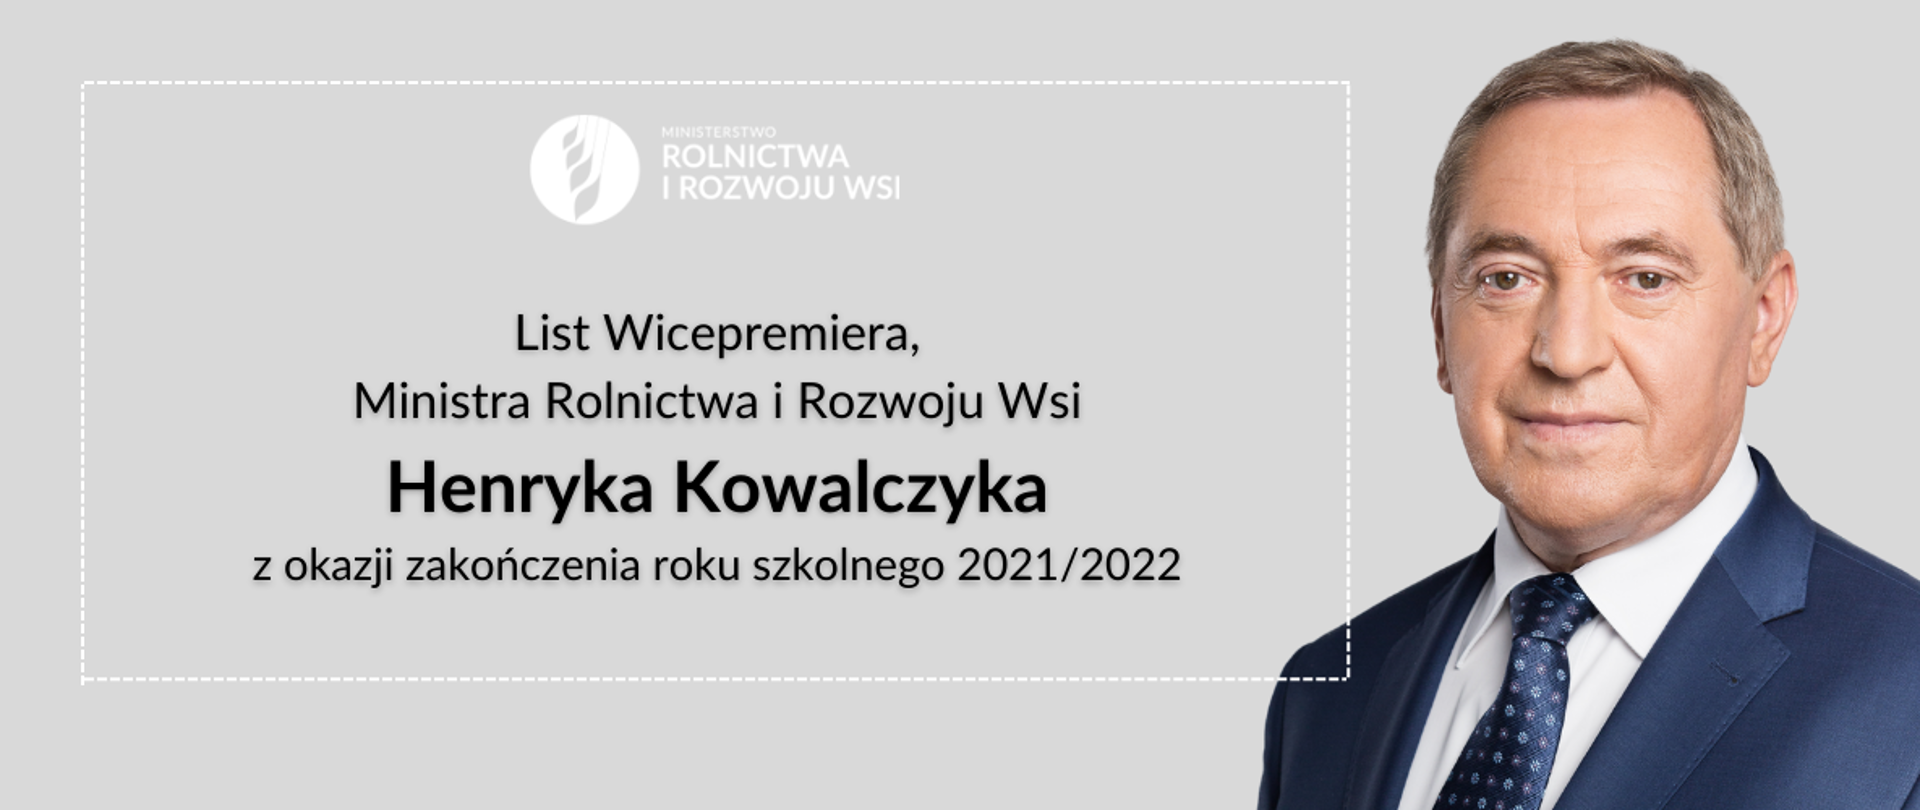 Wicepremier. minister rolnictwa i rozwoju wsi Henryk Kowalczyk